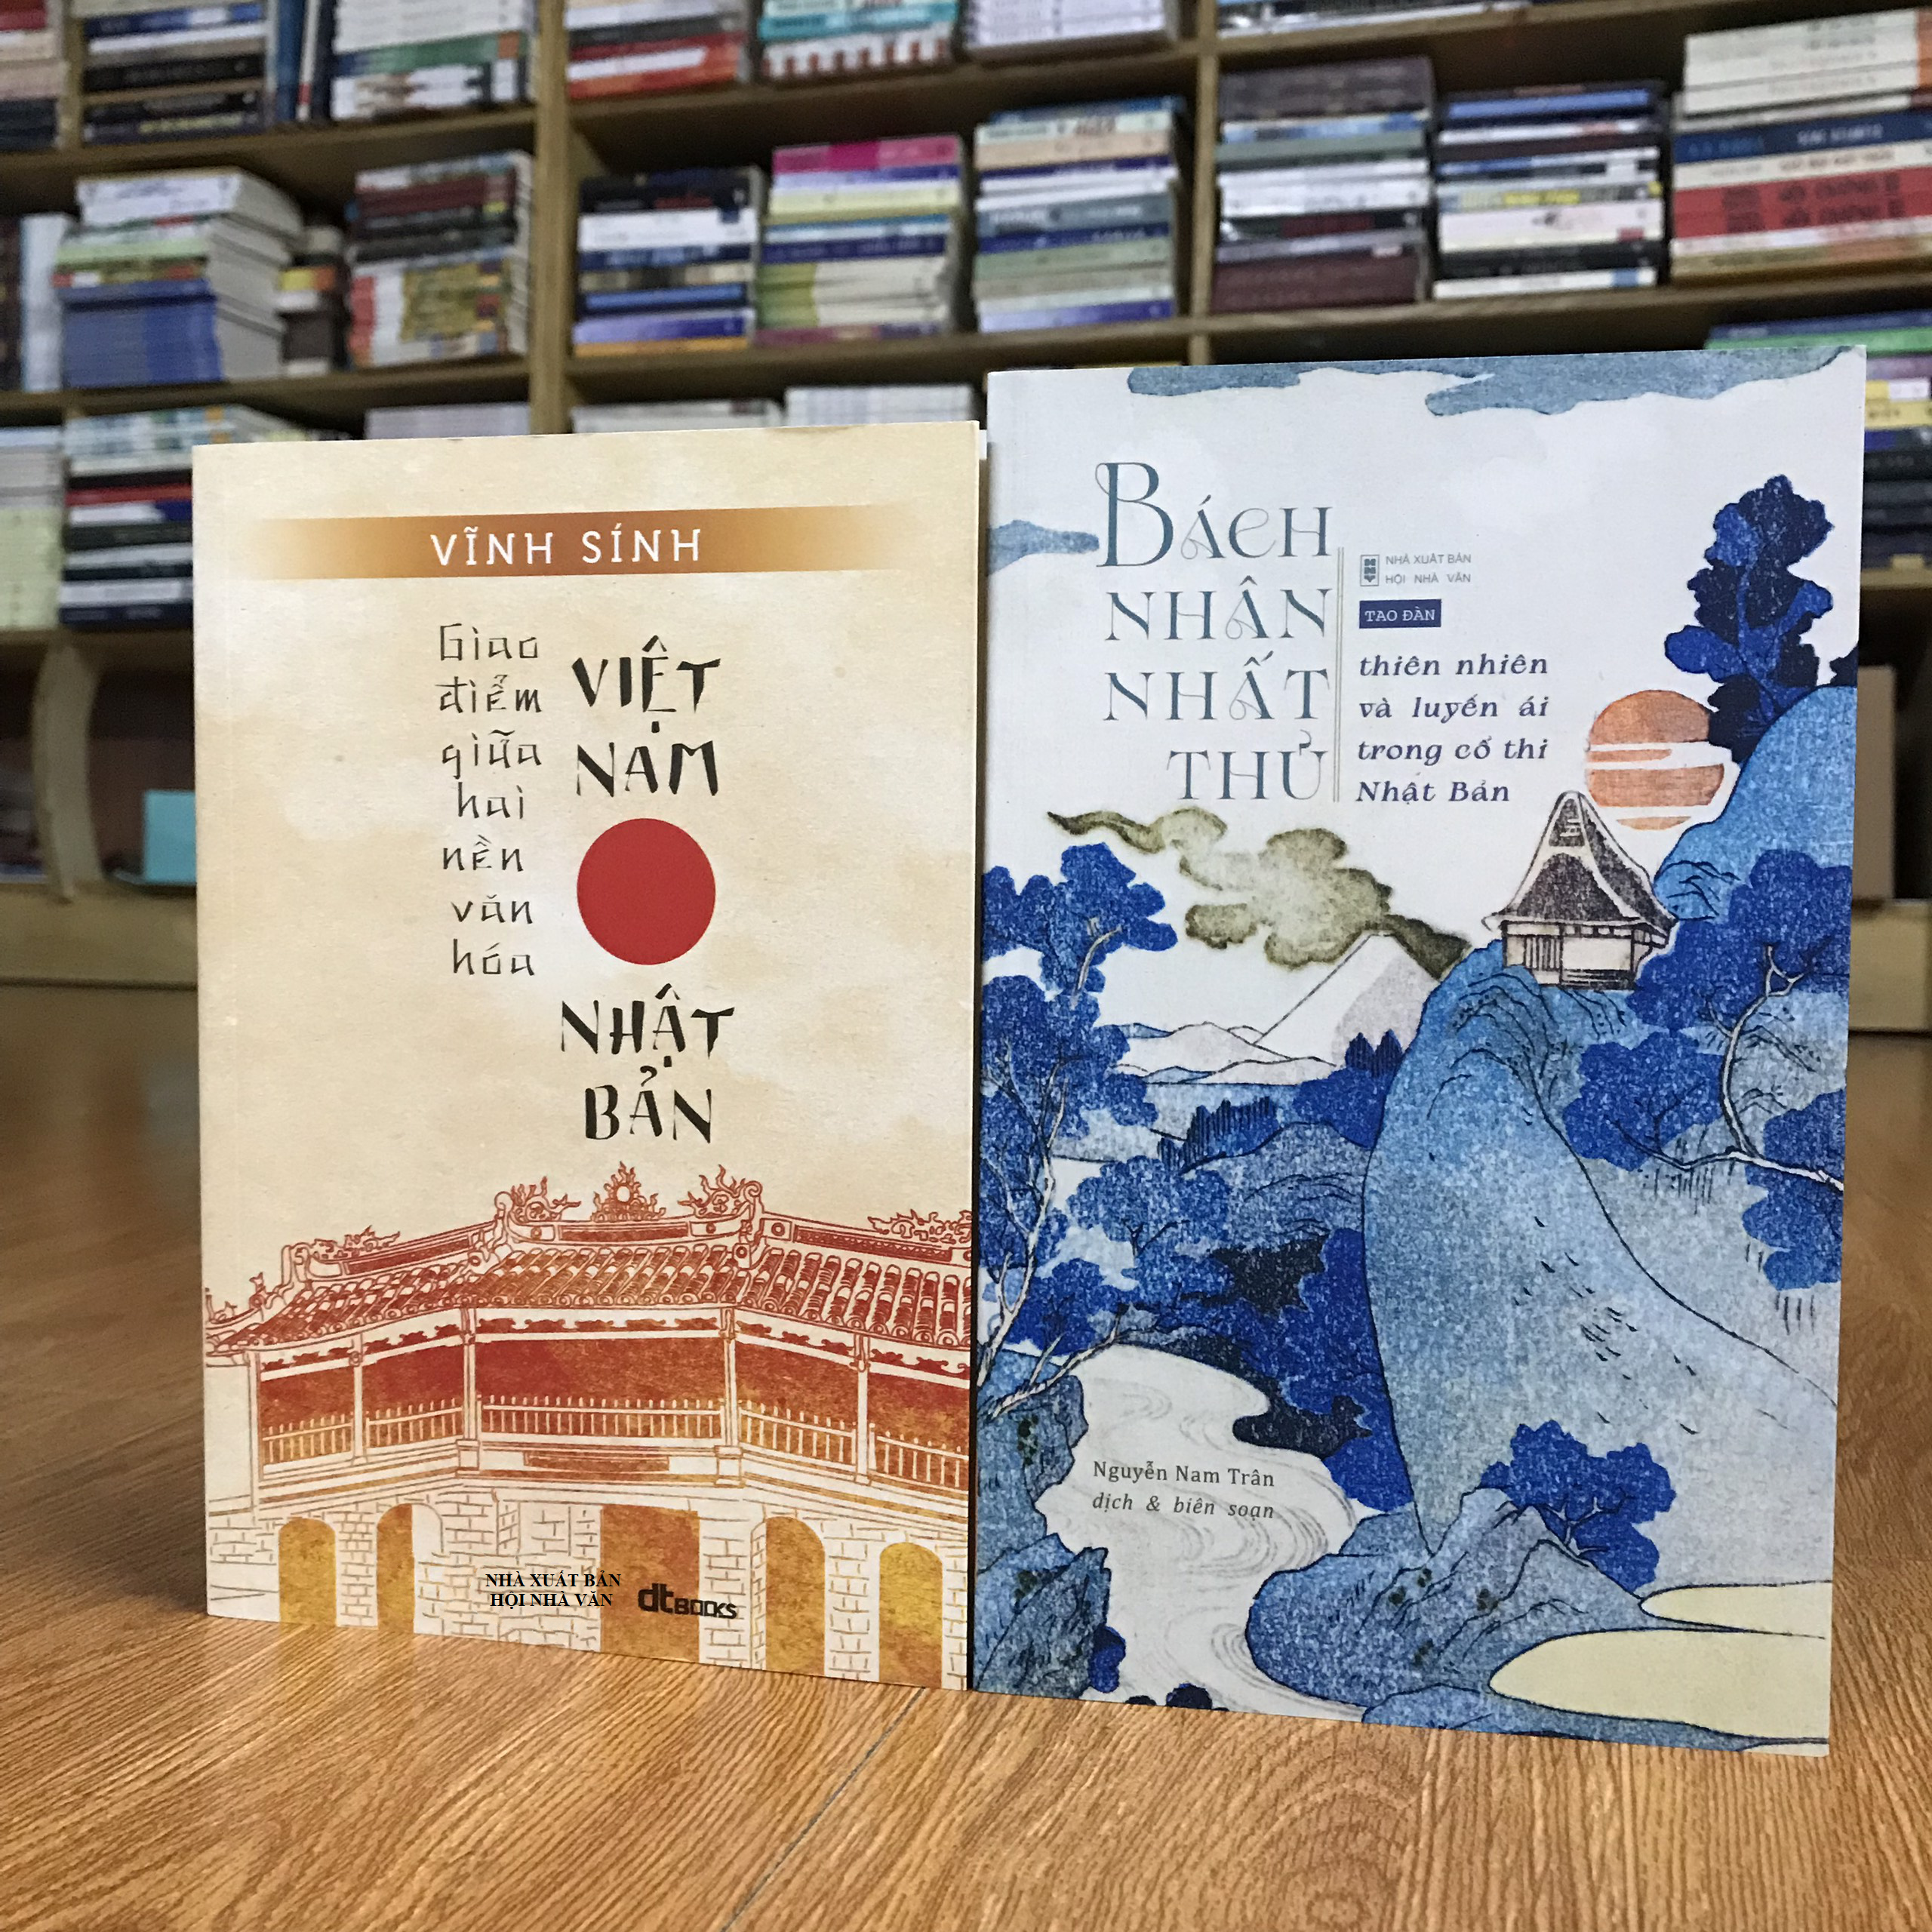 Com bo sách: Bách nhân nhất thủ - Thiên nhiên và luyến ái trong cổ thi + Giao Điểm Giữa Hai Nền Văn Hóa Việt Nam Và Nhật Bản